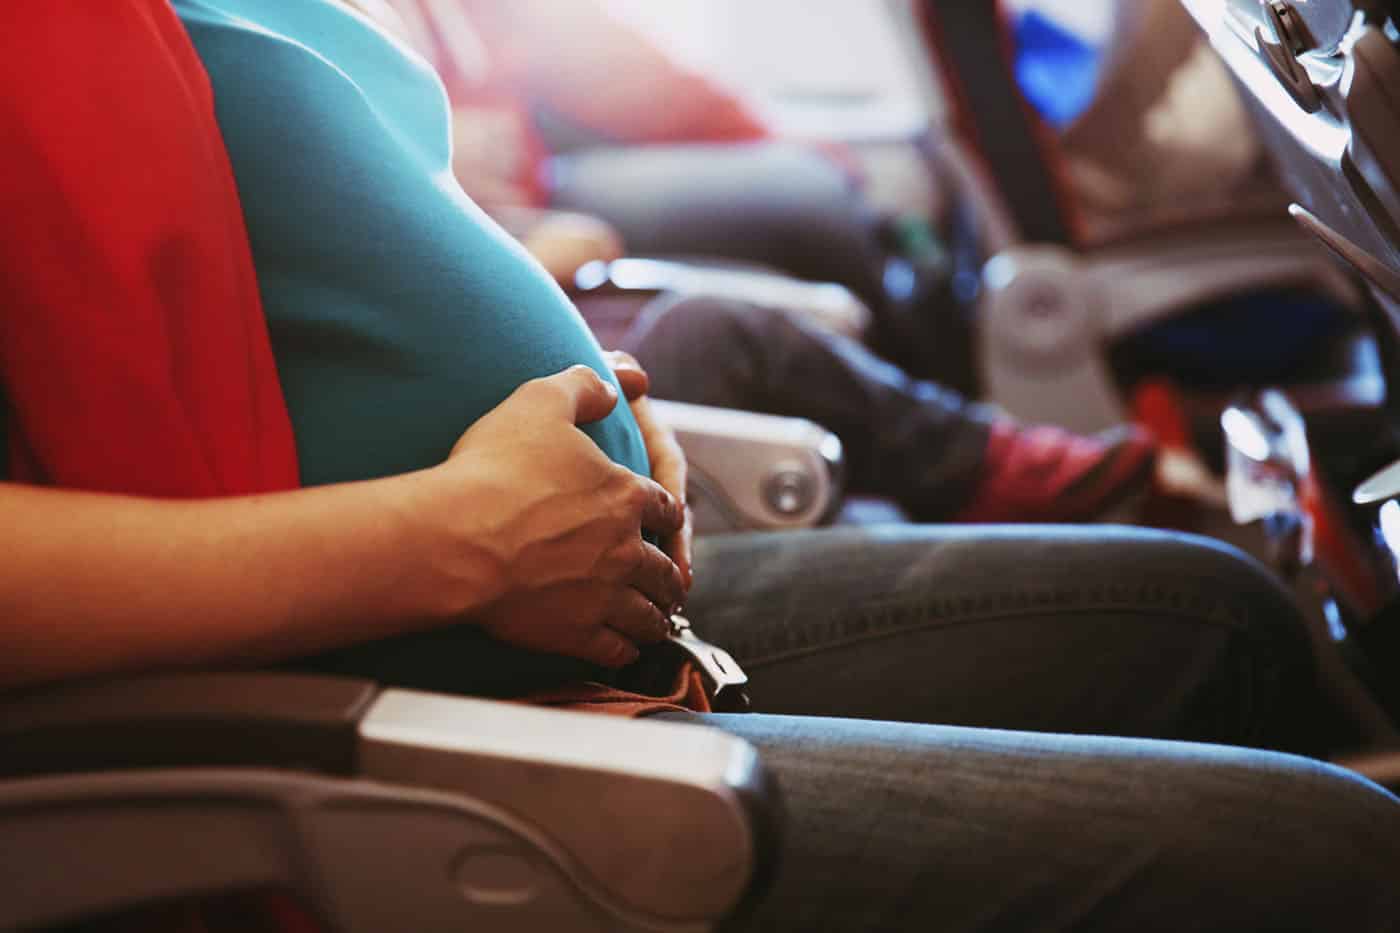 Mulher grávida no avião